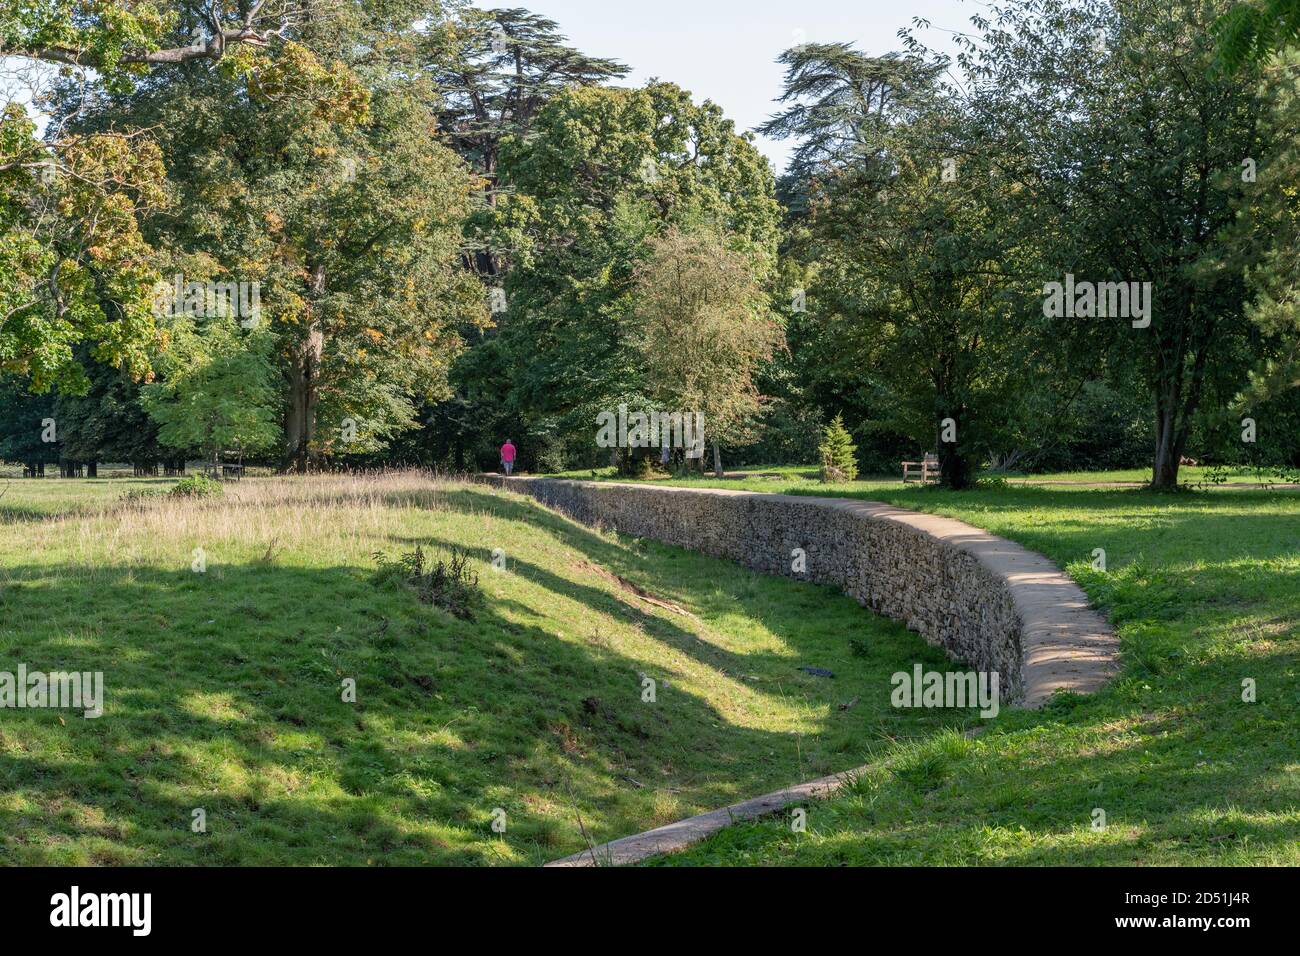 Ha ha ha o sunken fossato nei giardini di Castle Ashby House, Northamptonshire, UK; progettato per tenere fuori il bestiame senza rovinare la vista. Foto Stock